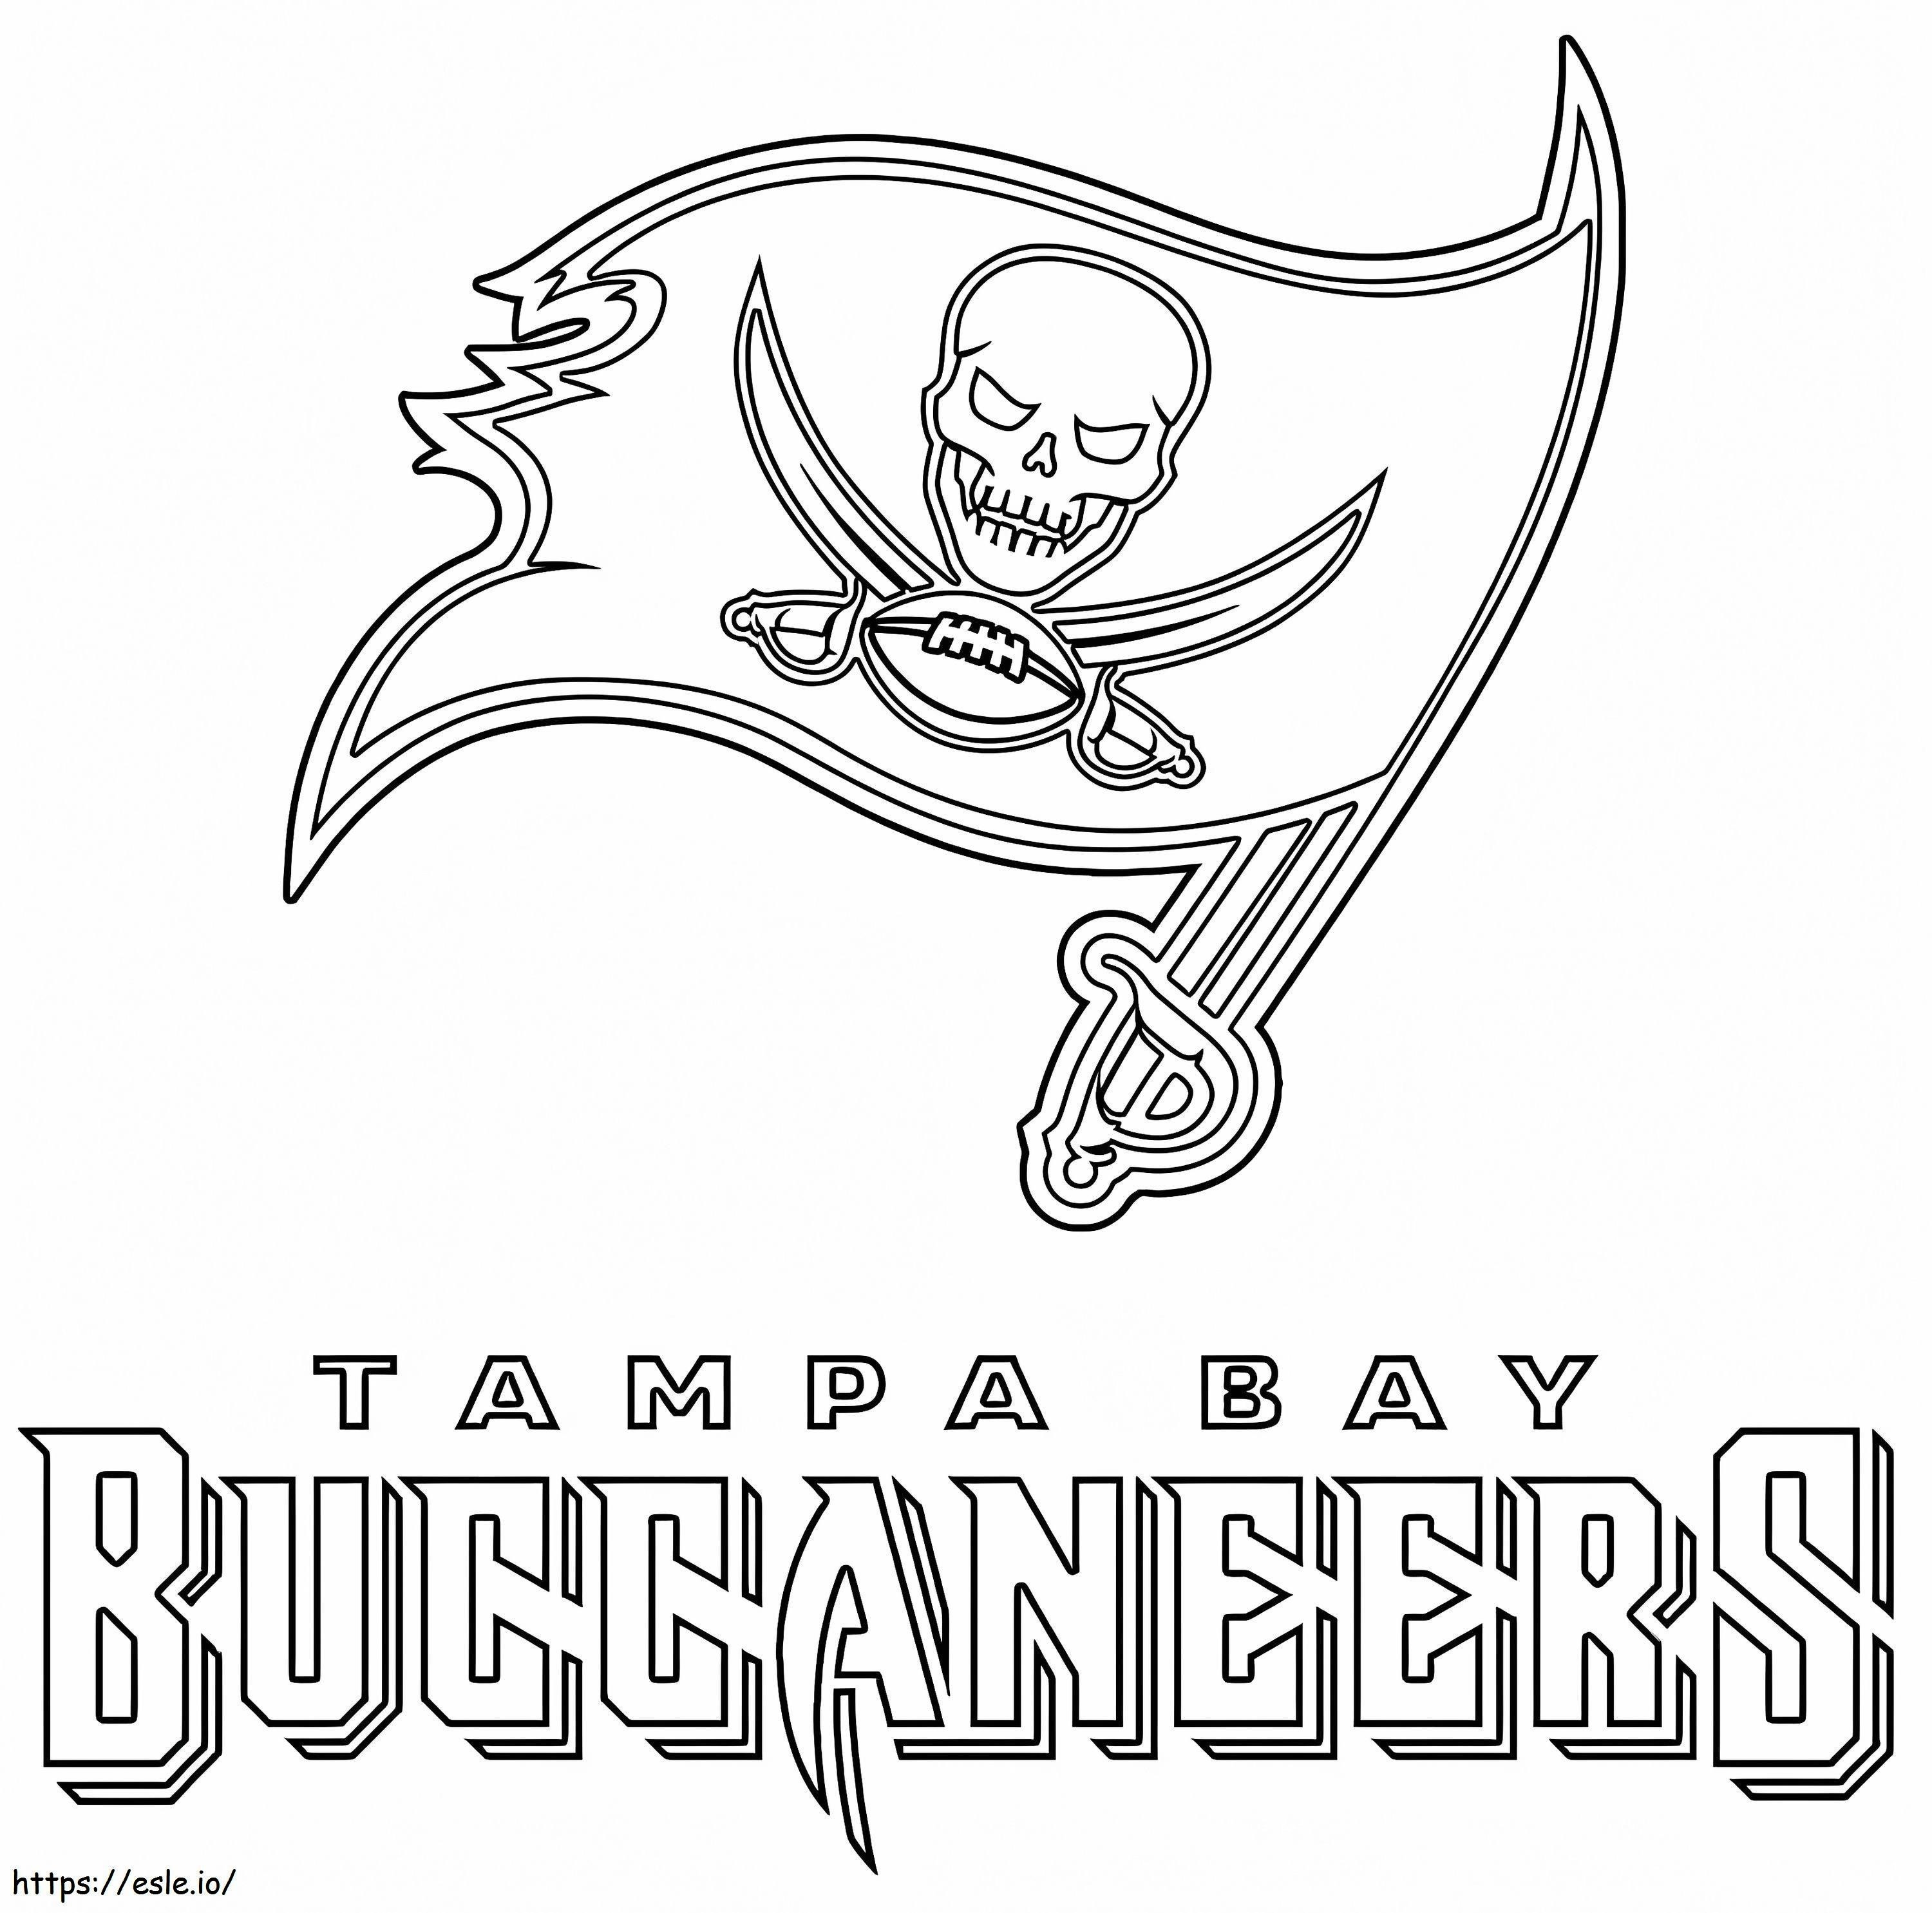 Tampa Bay Buccaneers de imprimat gratuit de colorat